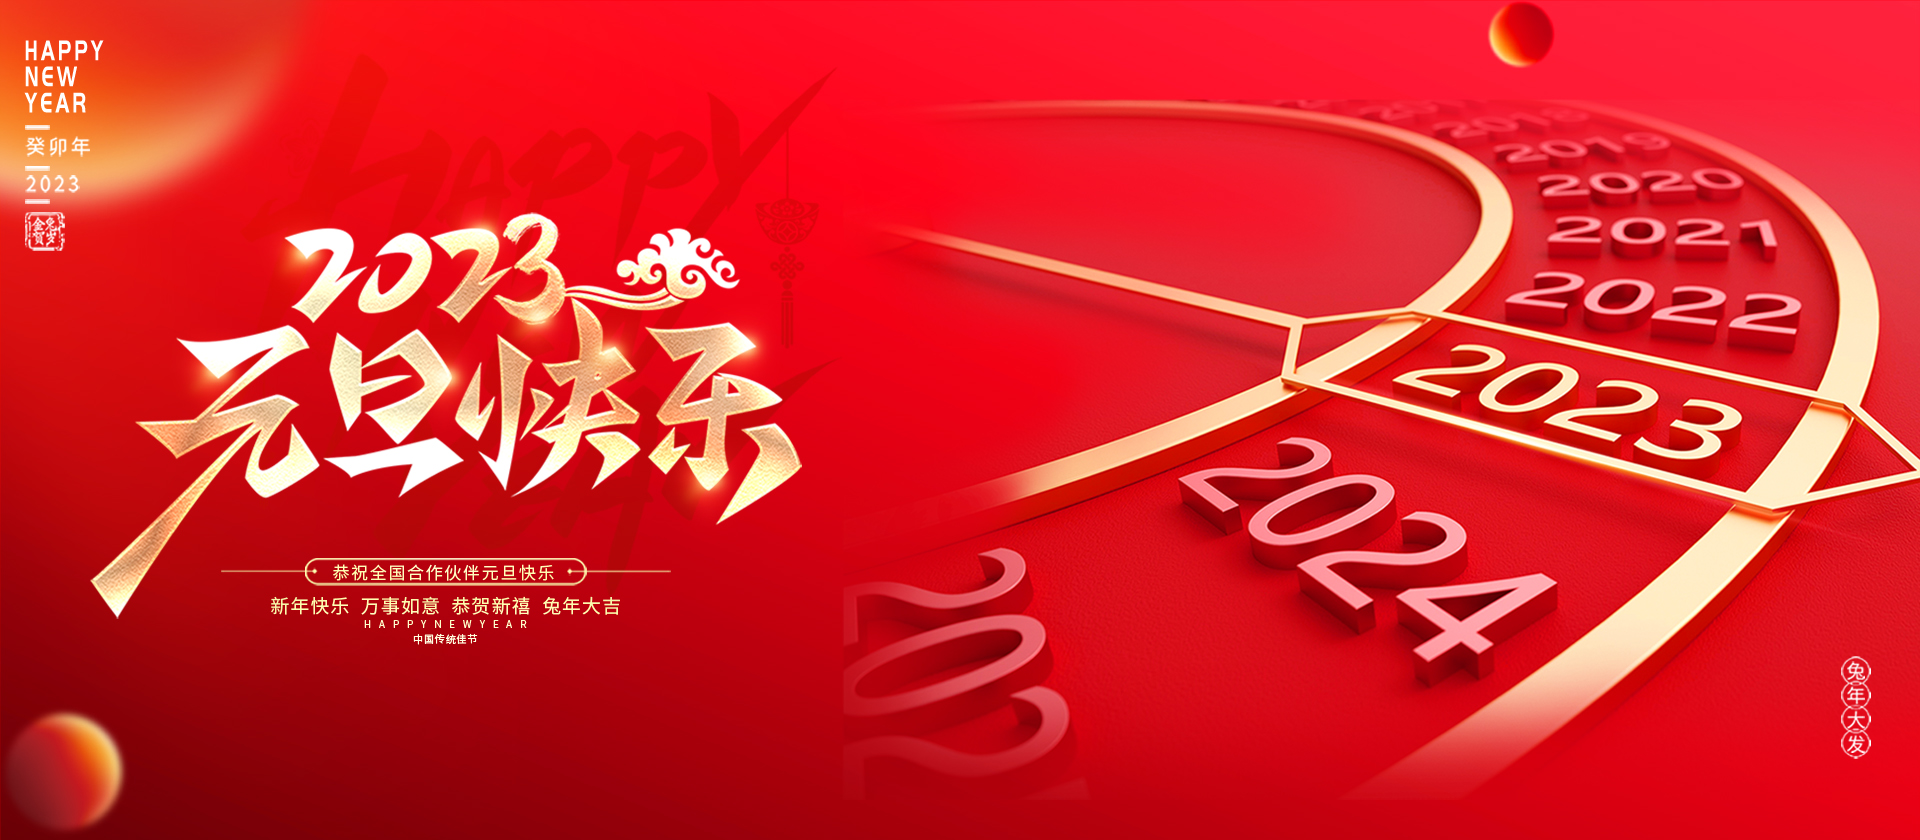 惠州市银华科技有限公司祝大家元旦快乐